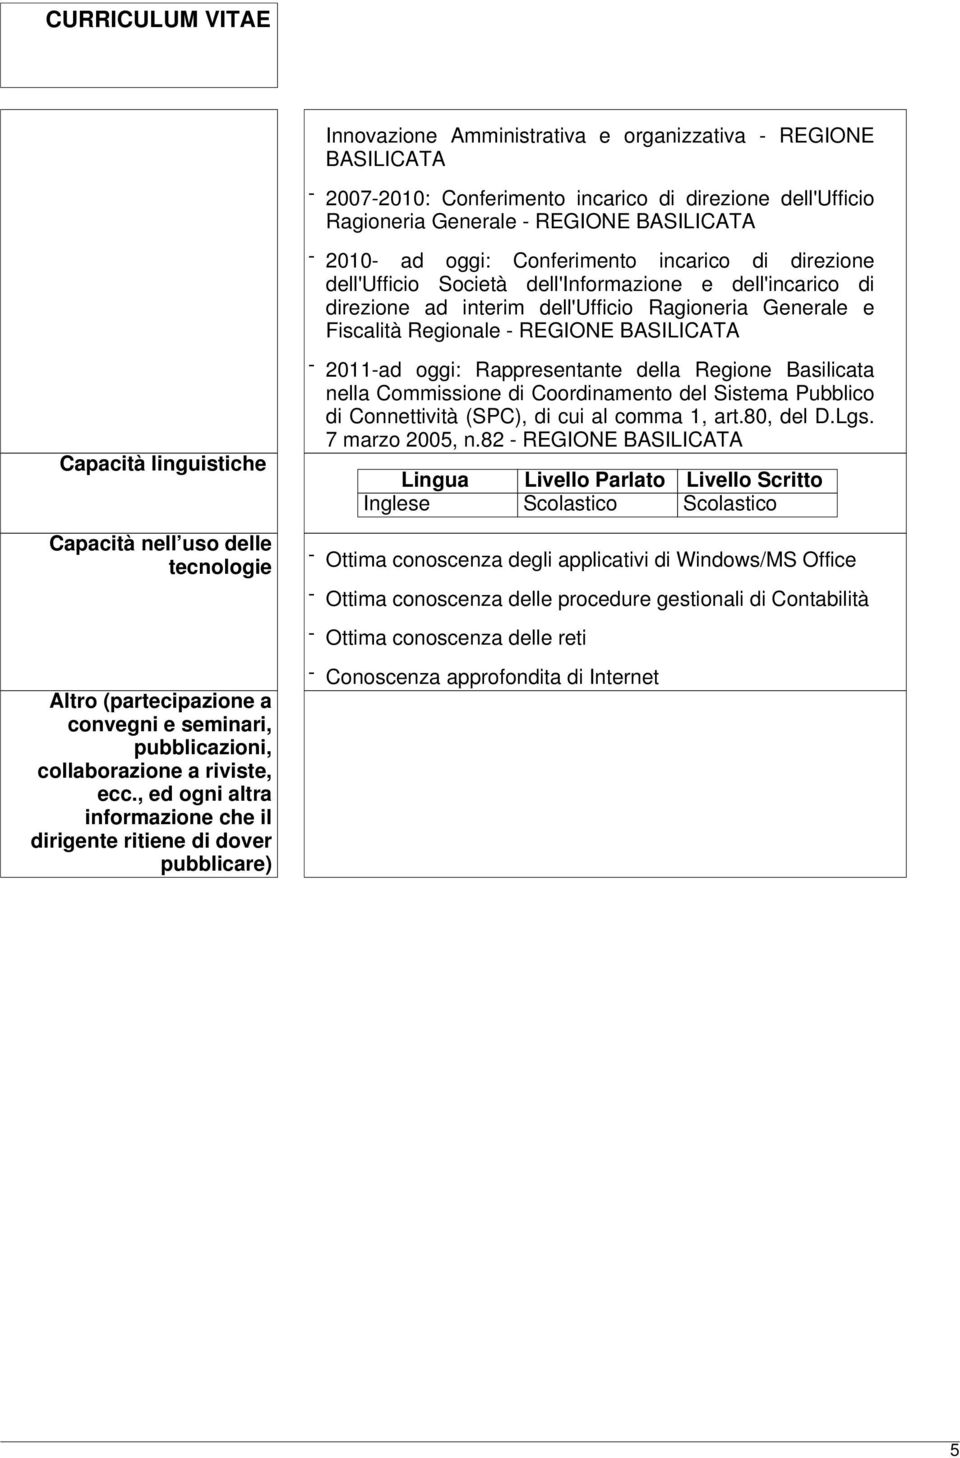 2011-ad oggi: Rappresentante della Regione Basilicata nella Commissione di Coordinamento del Sistema Pubblico di Connettività (SPC), di cui al comma 1, art.80, del D.Lgs. 7 marzo 2005, n.